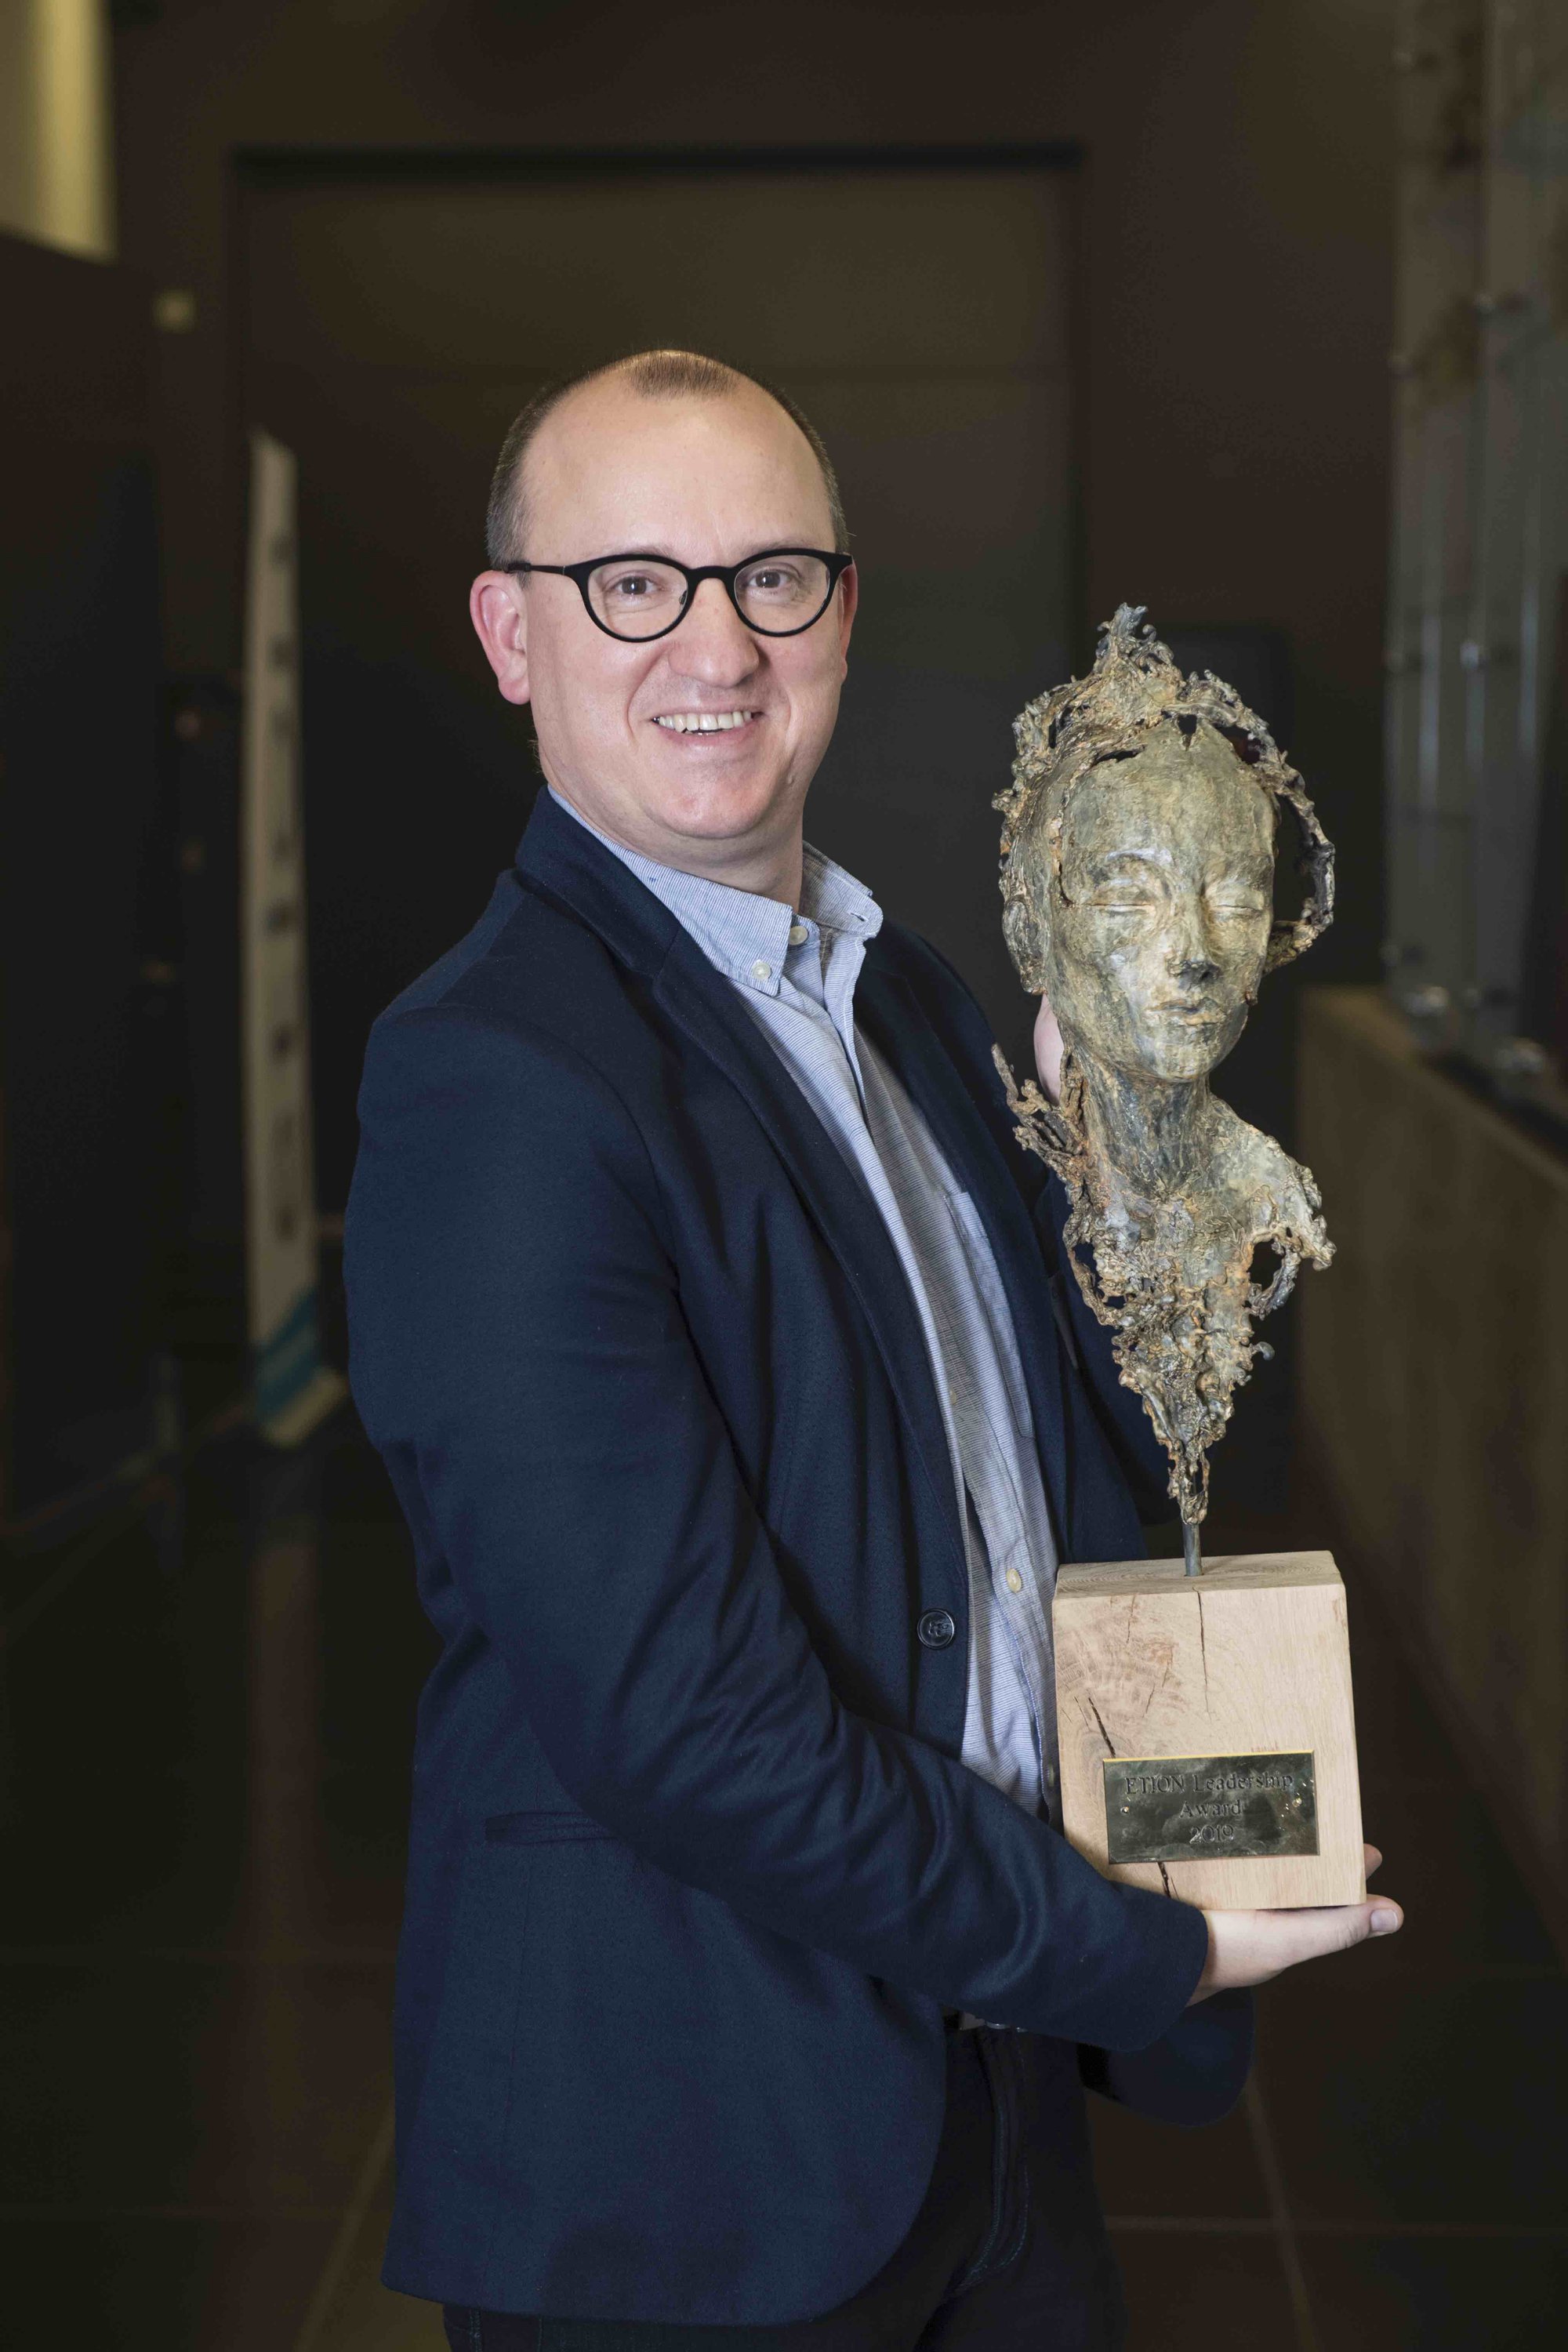 Toon Bossuyt wint Etion Leadership Award voor zijn geëngageerd leiderschap